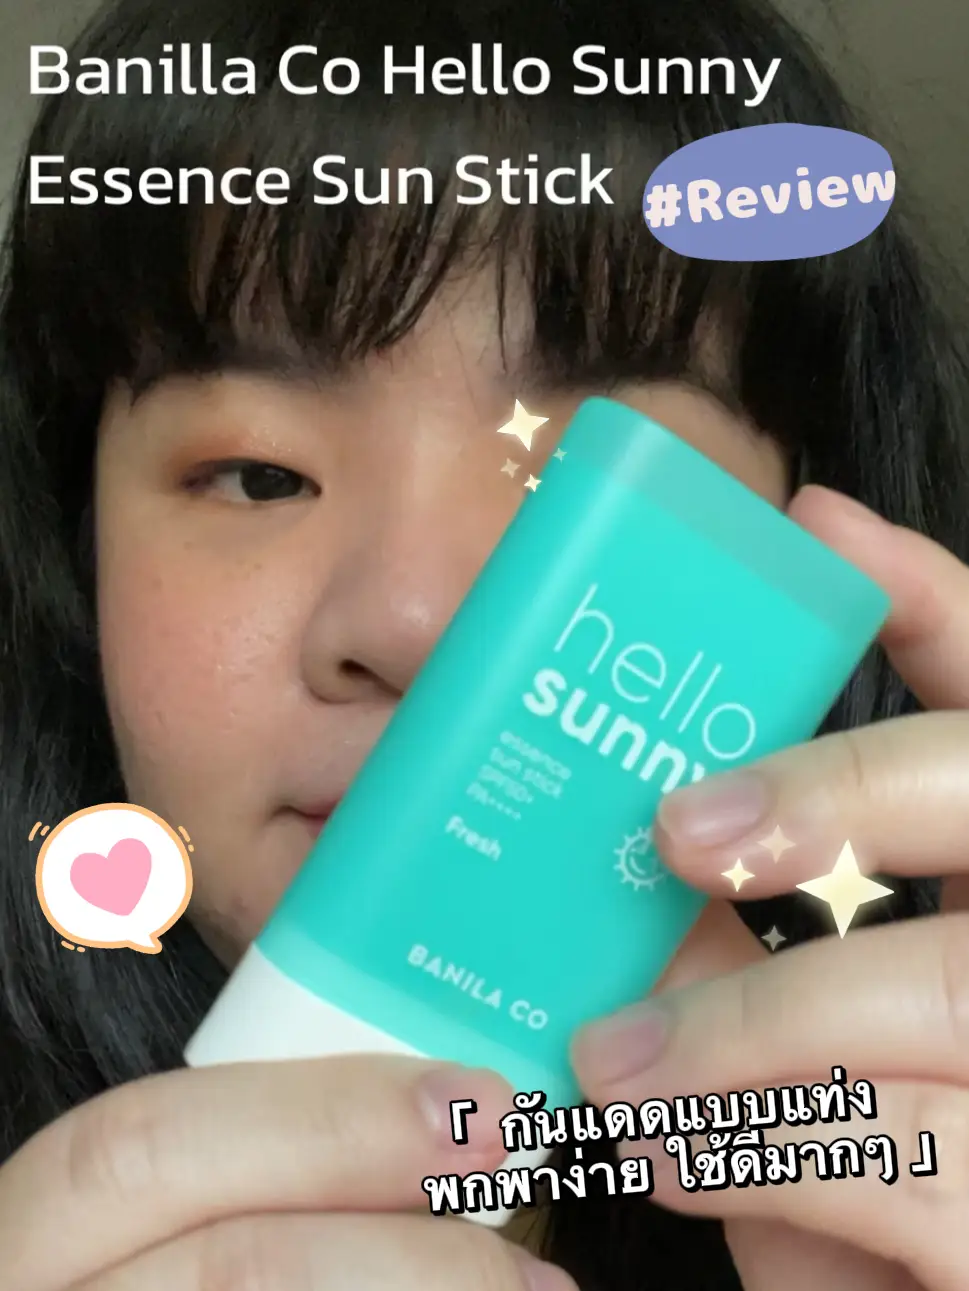 Hello Sunny Sun Stick 50+ Fresh de BANILA CO ❤️ Comprar online